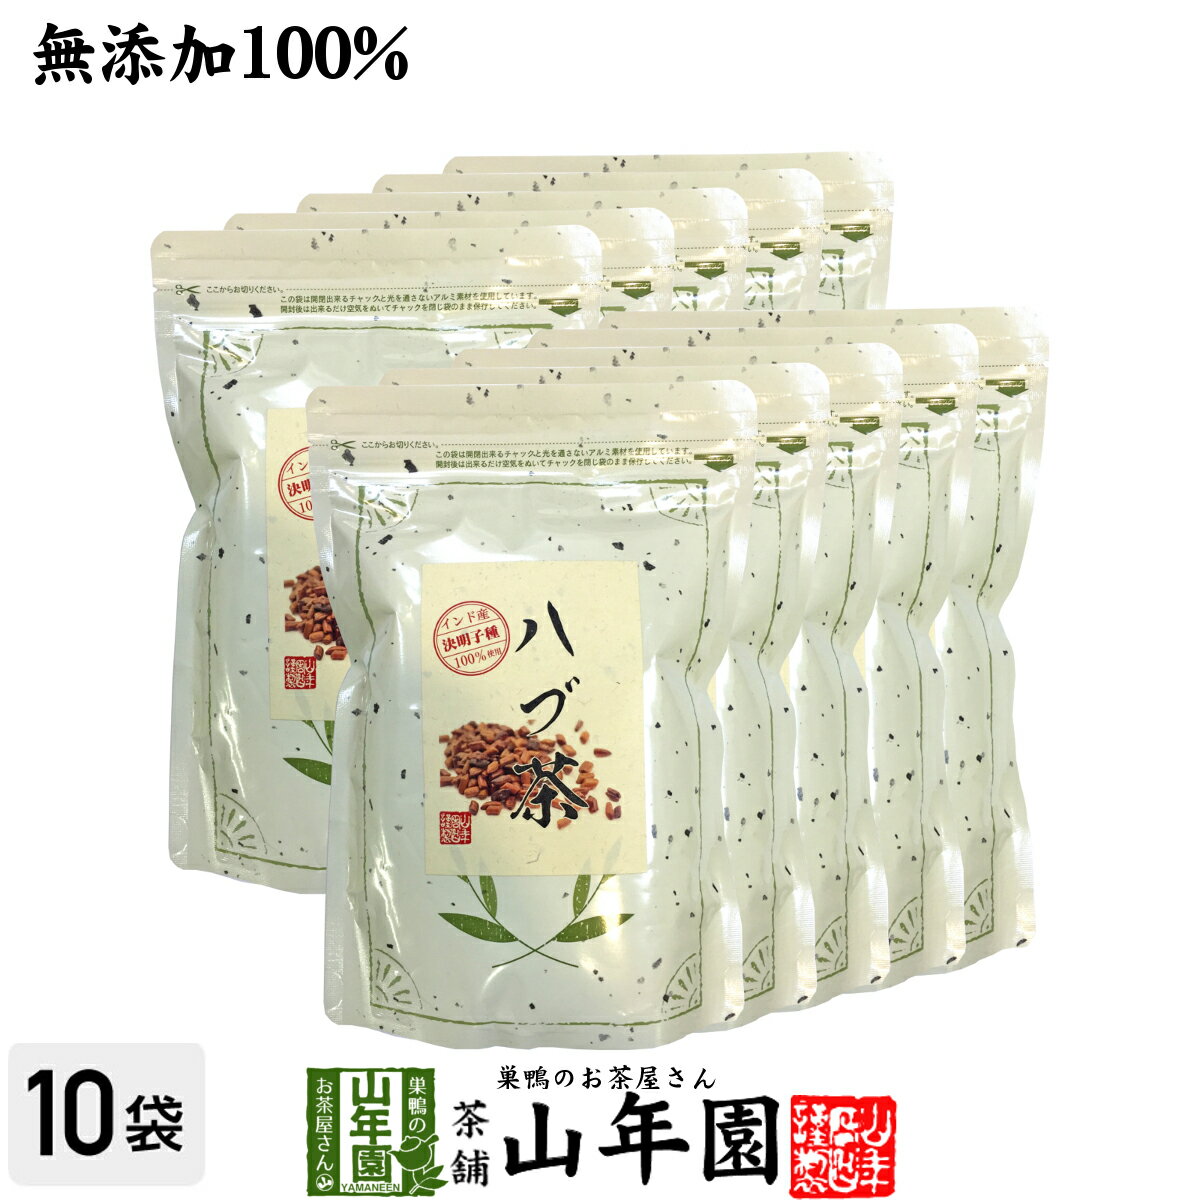 【無添加 100%】ハブ茶 ケツメイシ種 500g×10袋セ